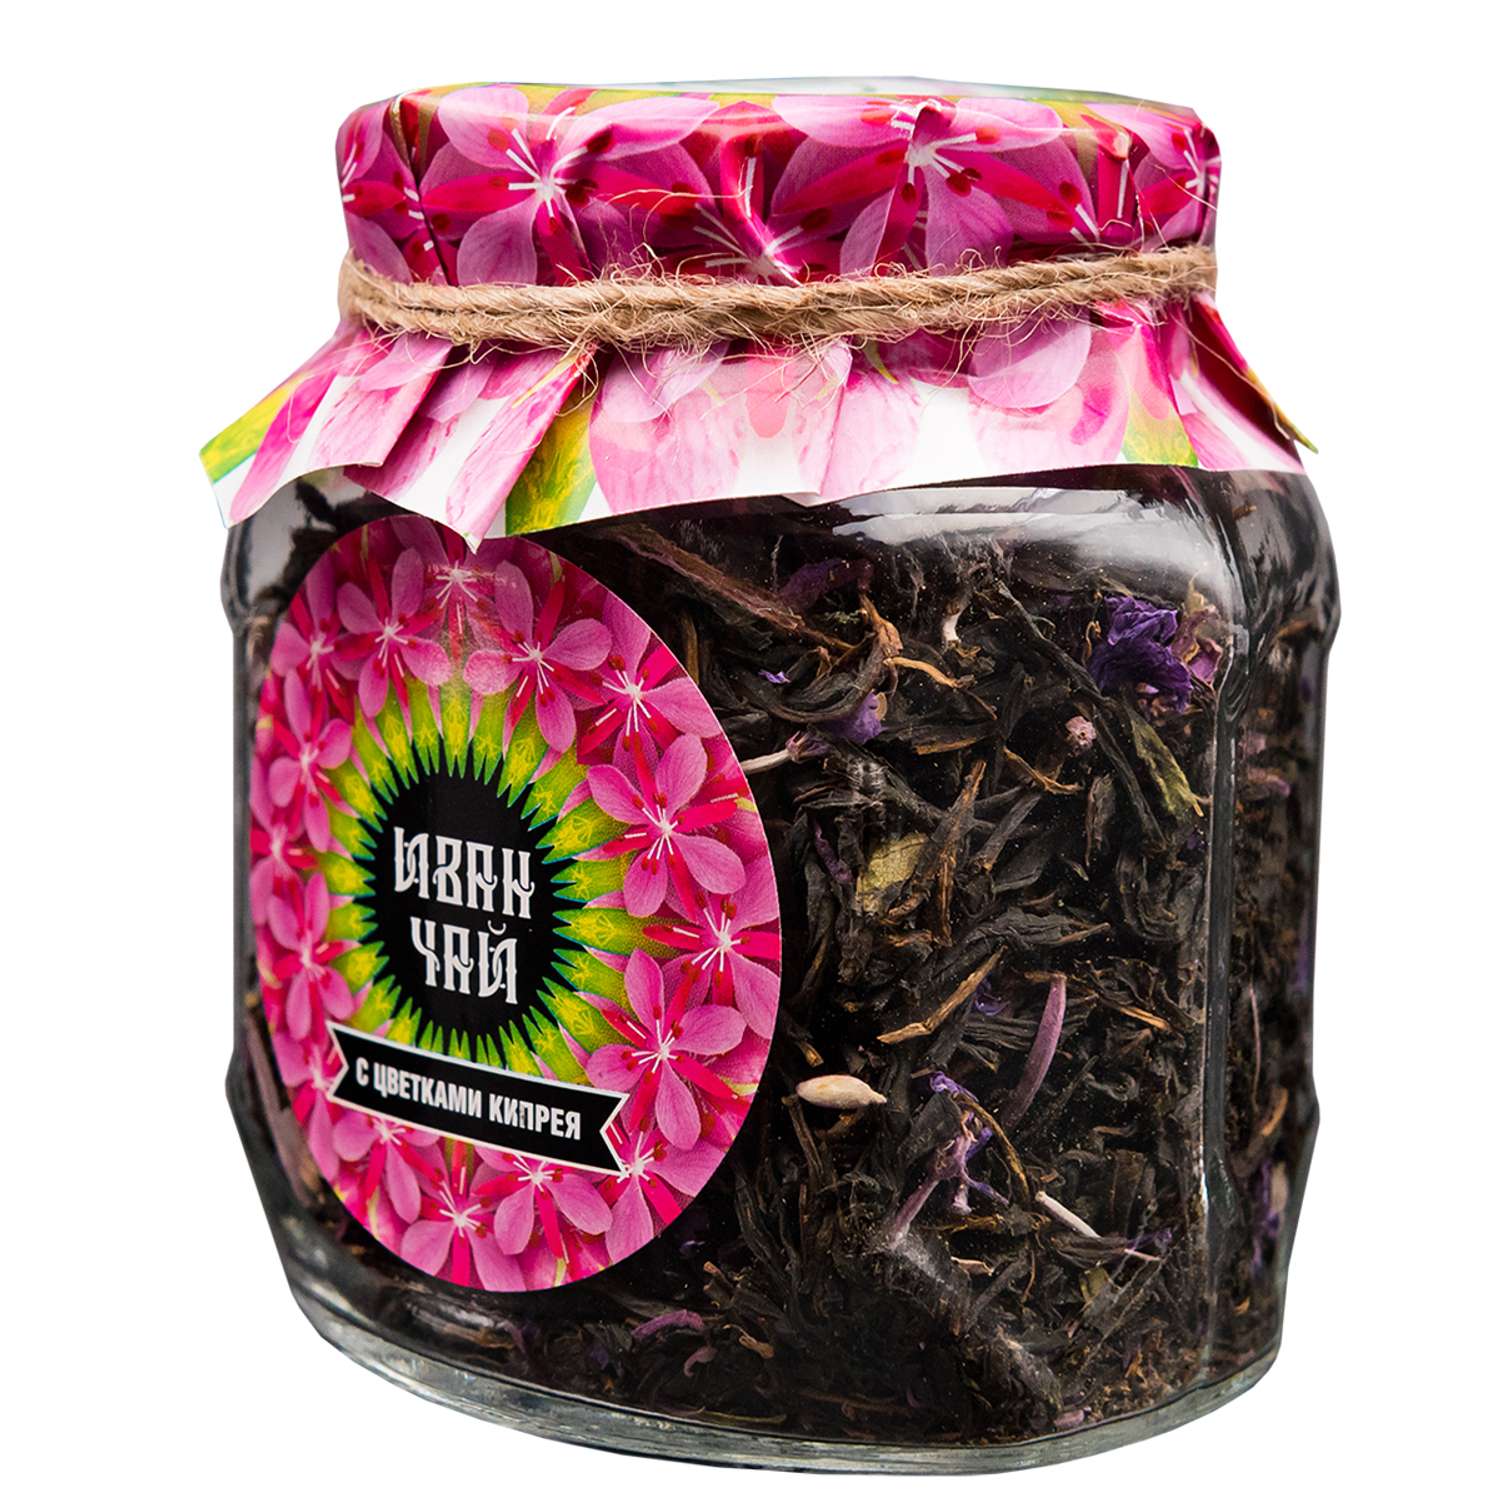 Чай Емельяновская Биофабрика иван-чай в стеклянной банке с цветами кипрея ферментированный 50 гр. в подарочной упаковке - фото 2